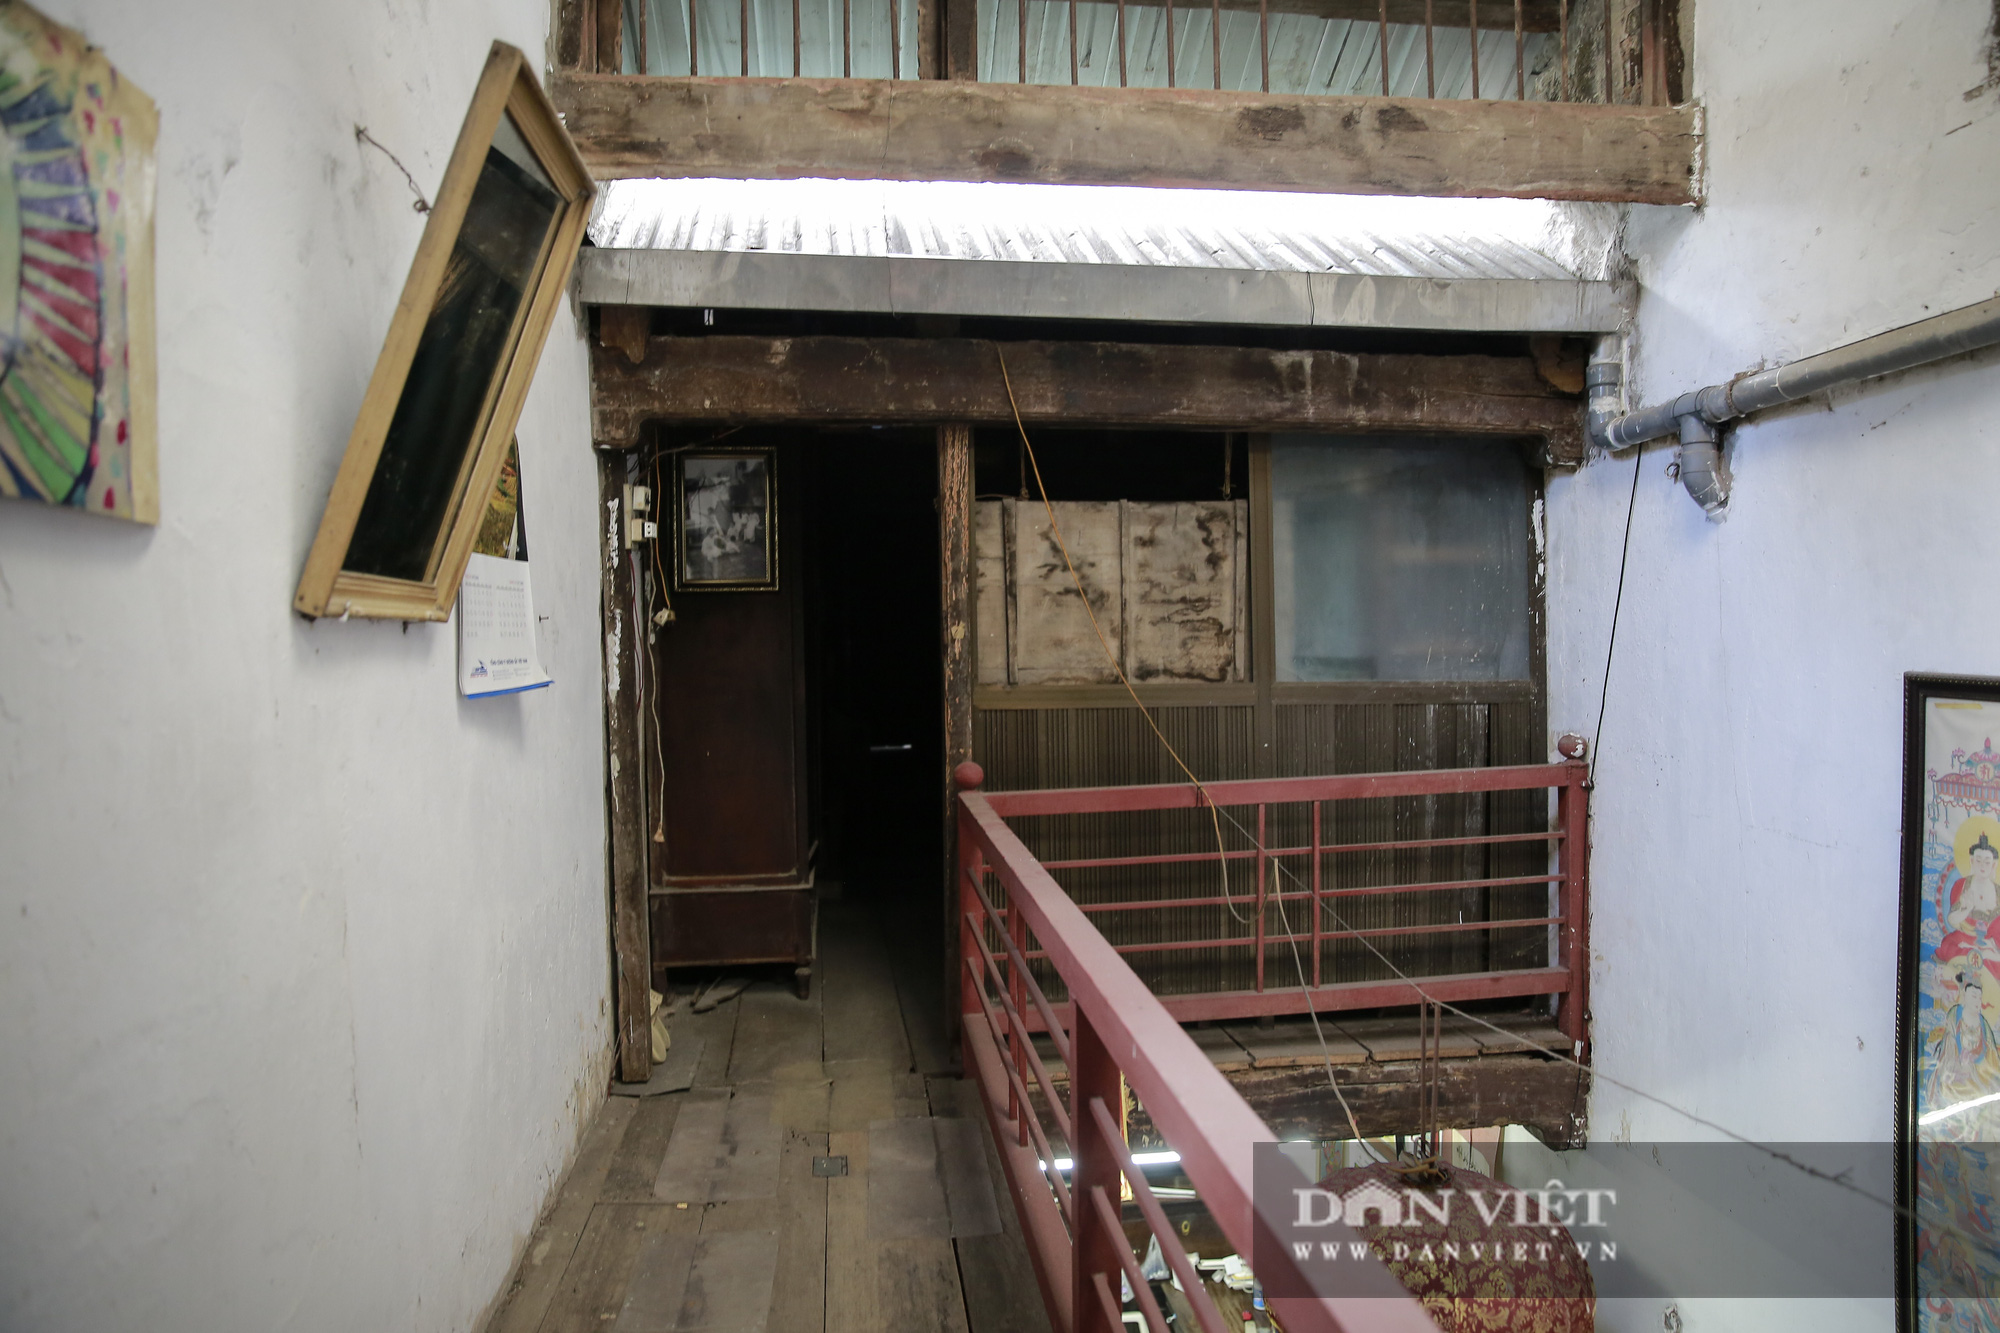 Căn nhà hình “hộp diêm” hơn 130 năm tuổi độc nhất phố cổ Hà Nội - Ảnh 7.